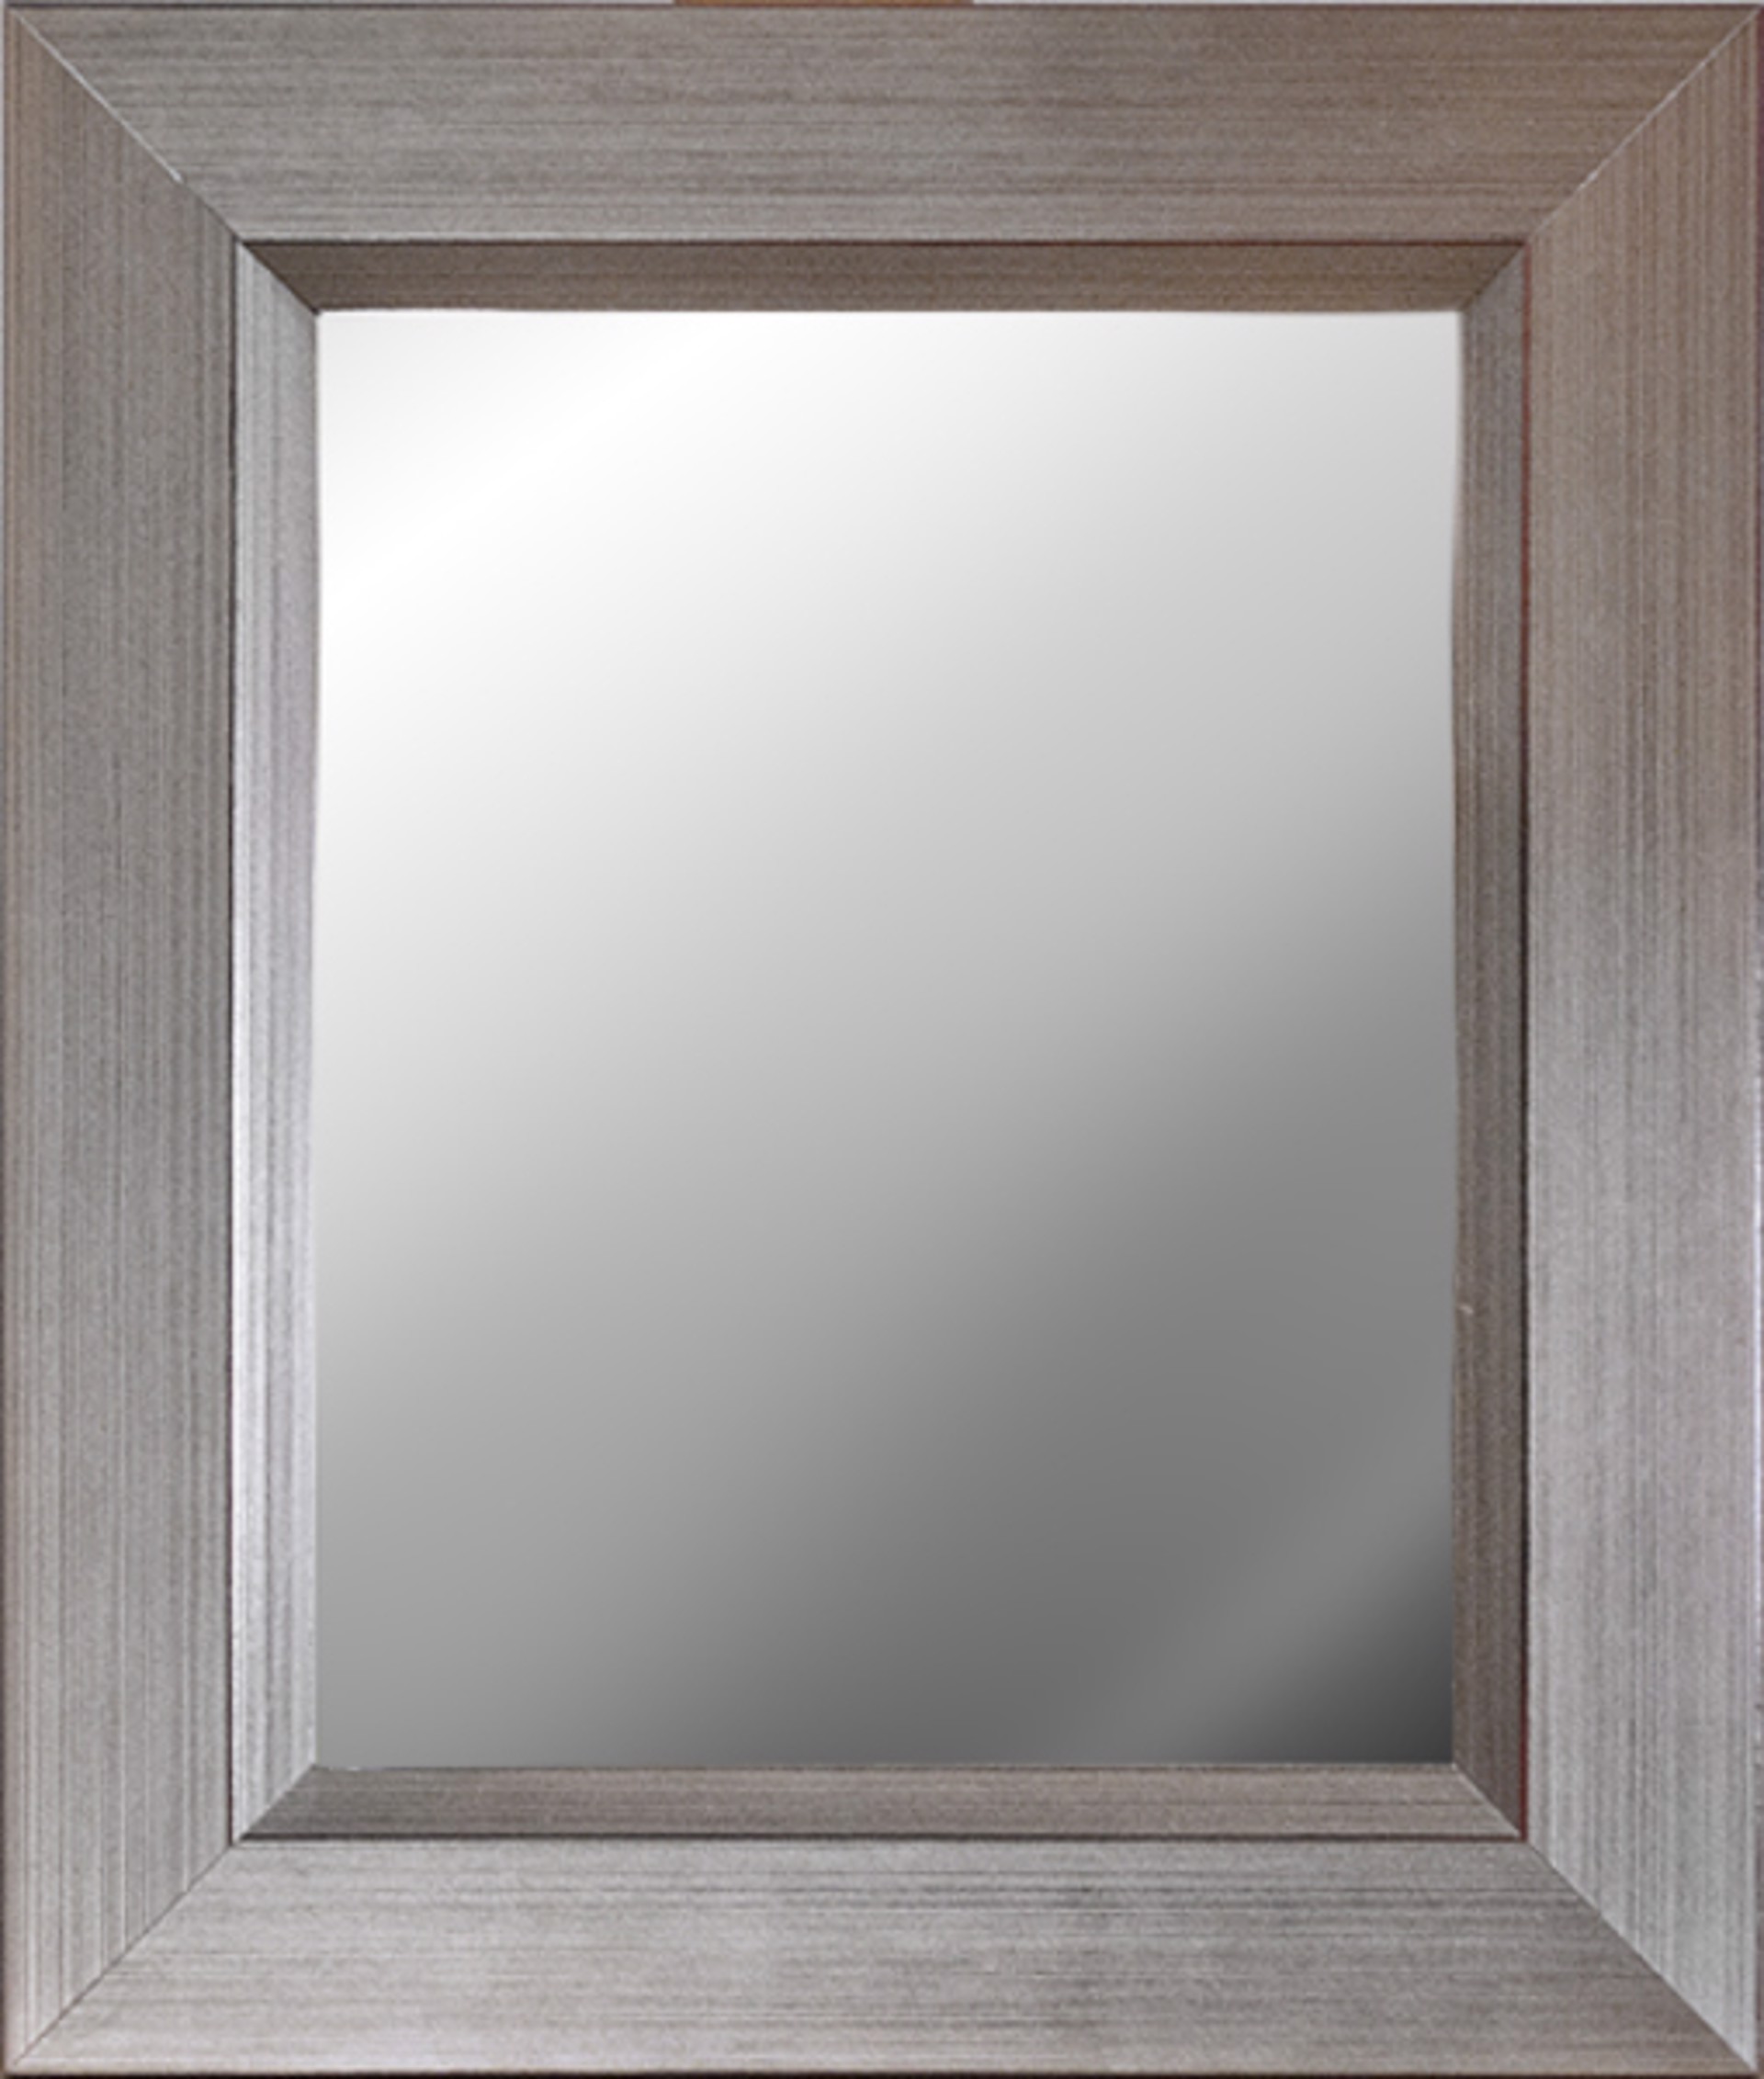 Framed Mirror 10"x8"